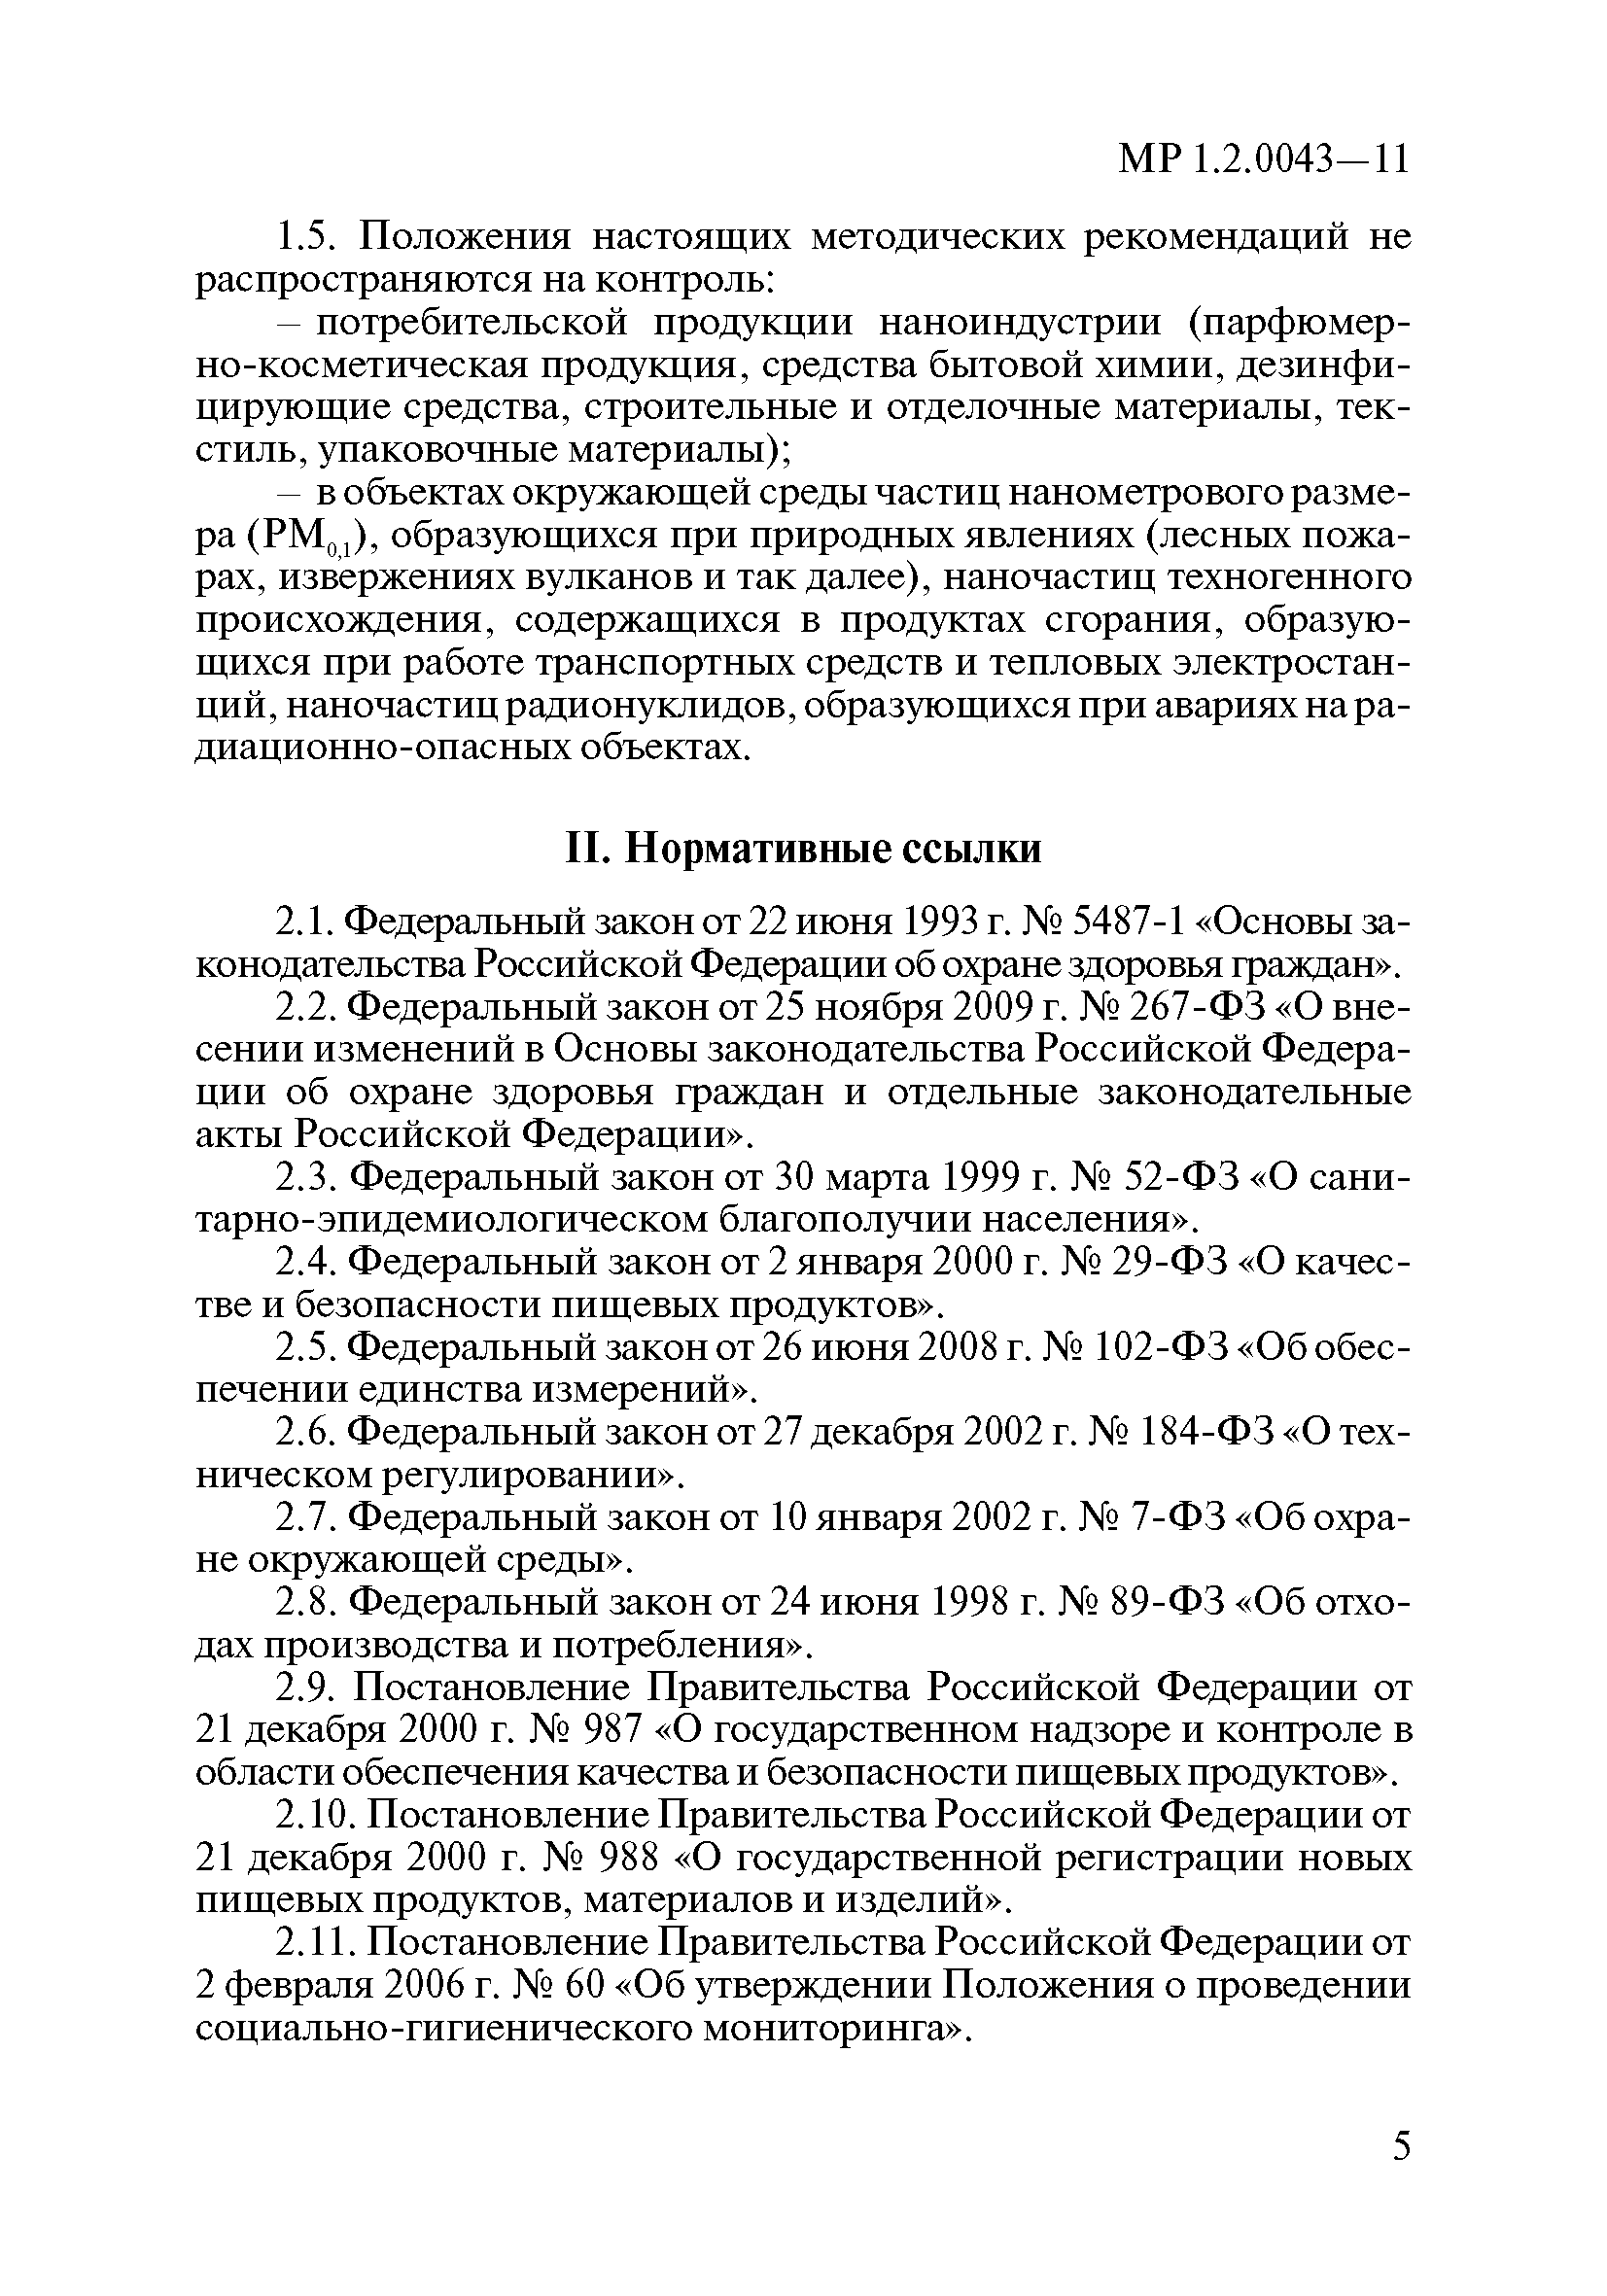 МР 1.2.0043-11